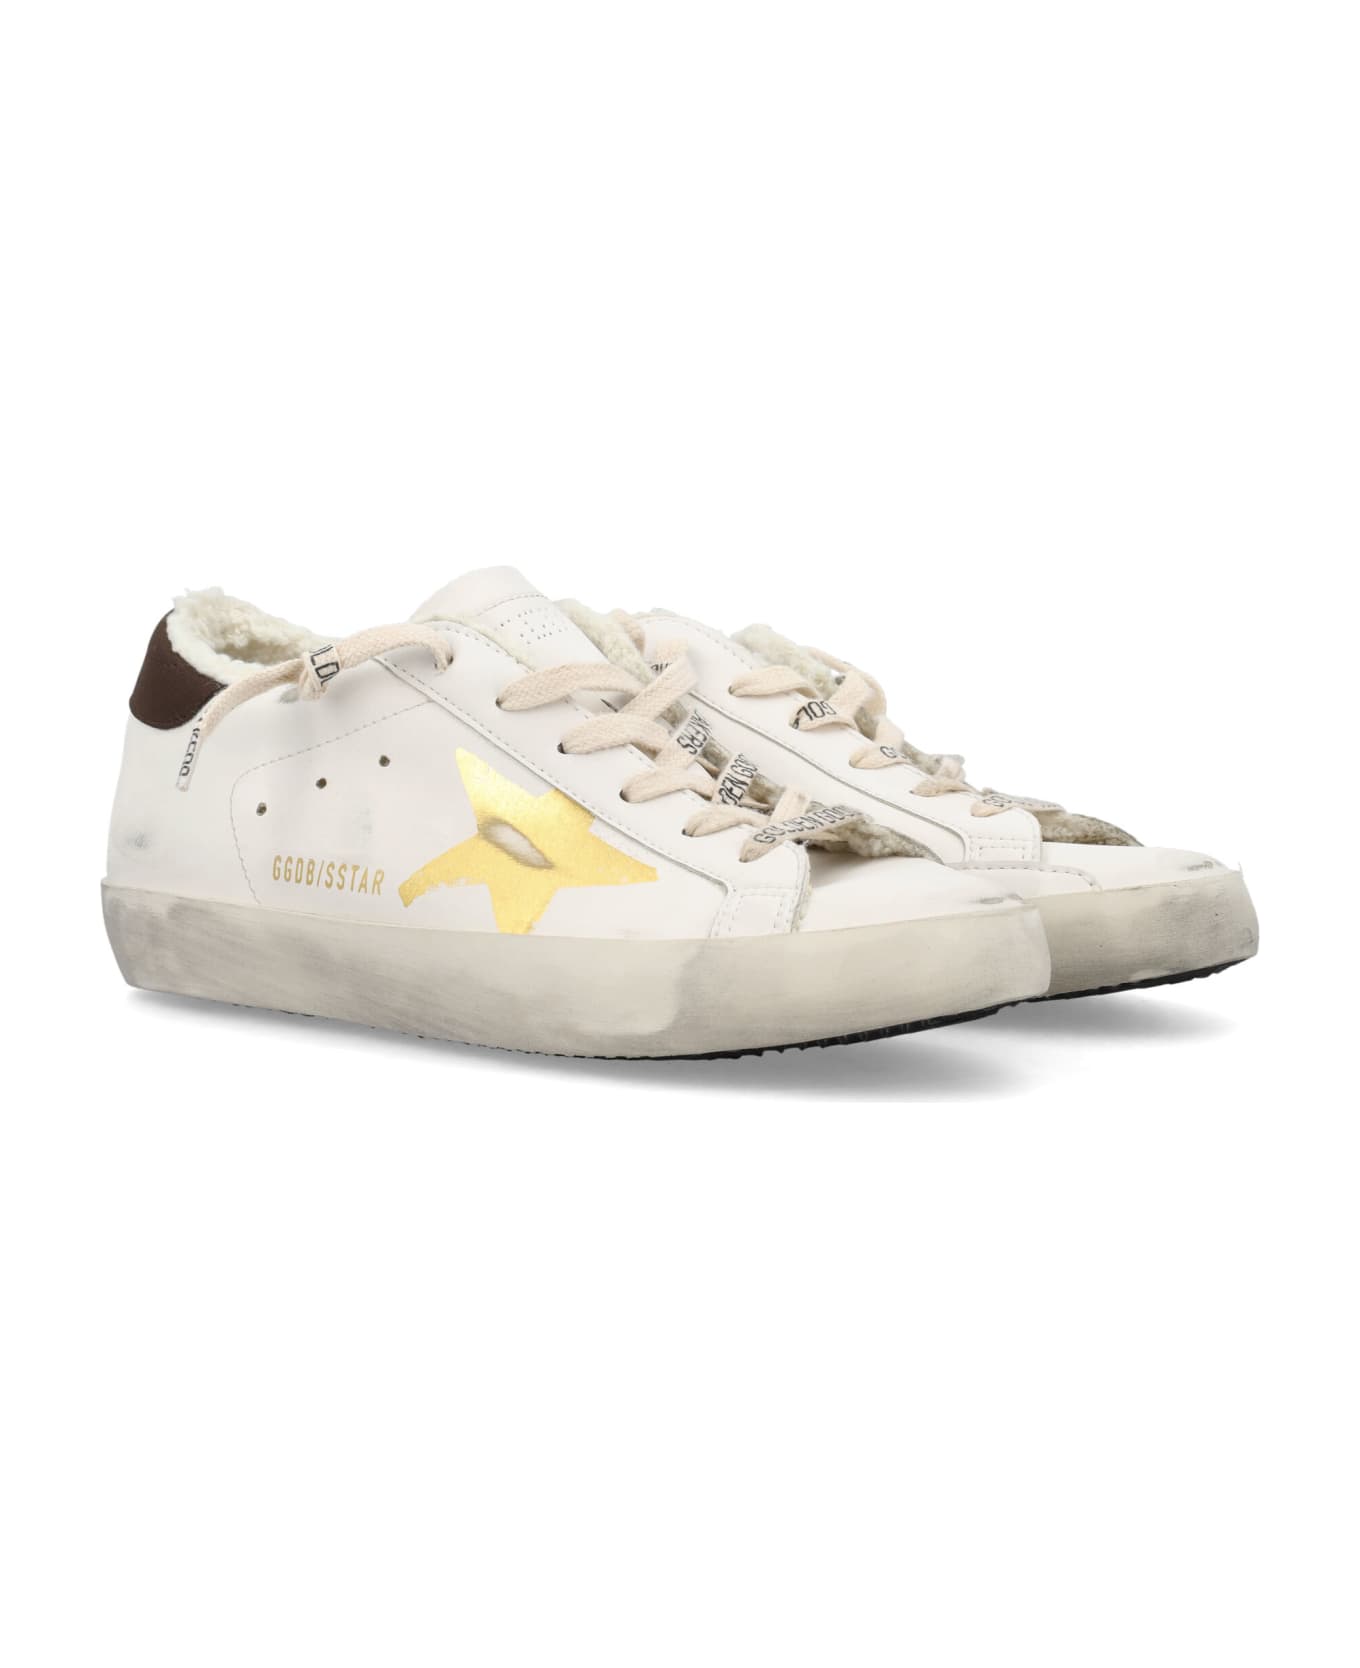 Golden Goose Super Star Sneakers - White/Gold スニーカー